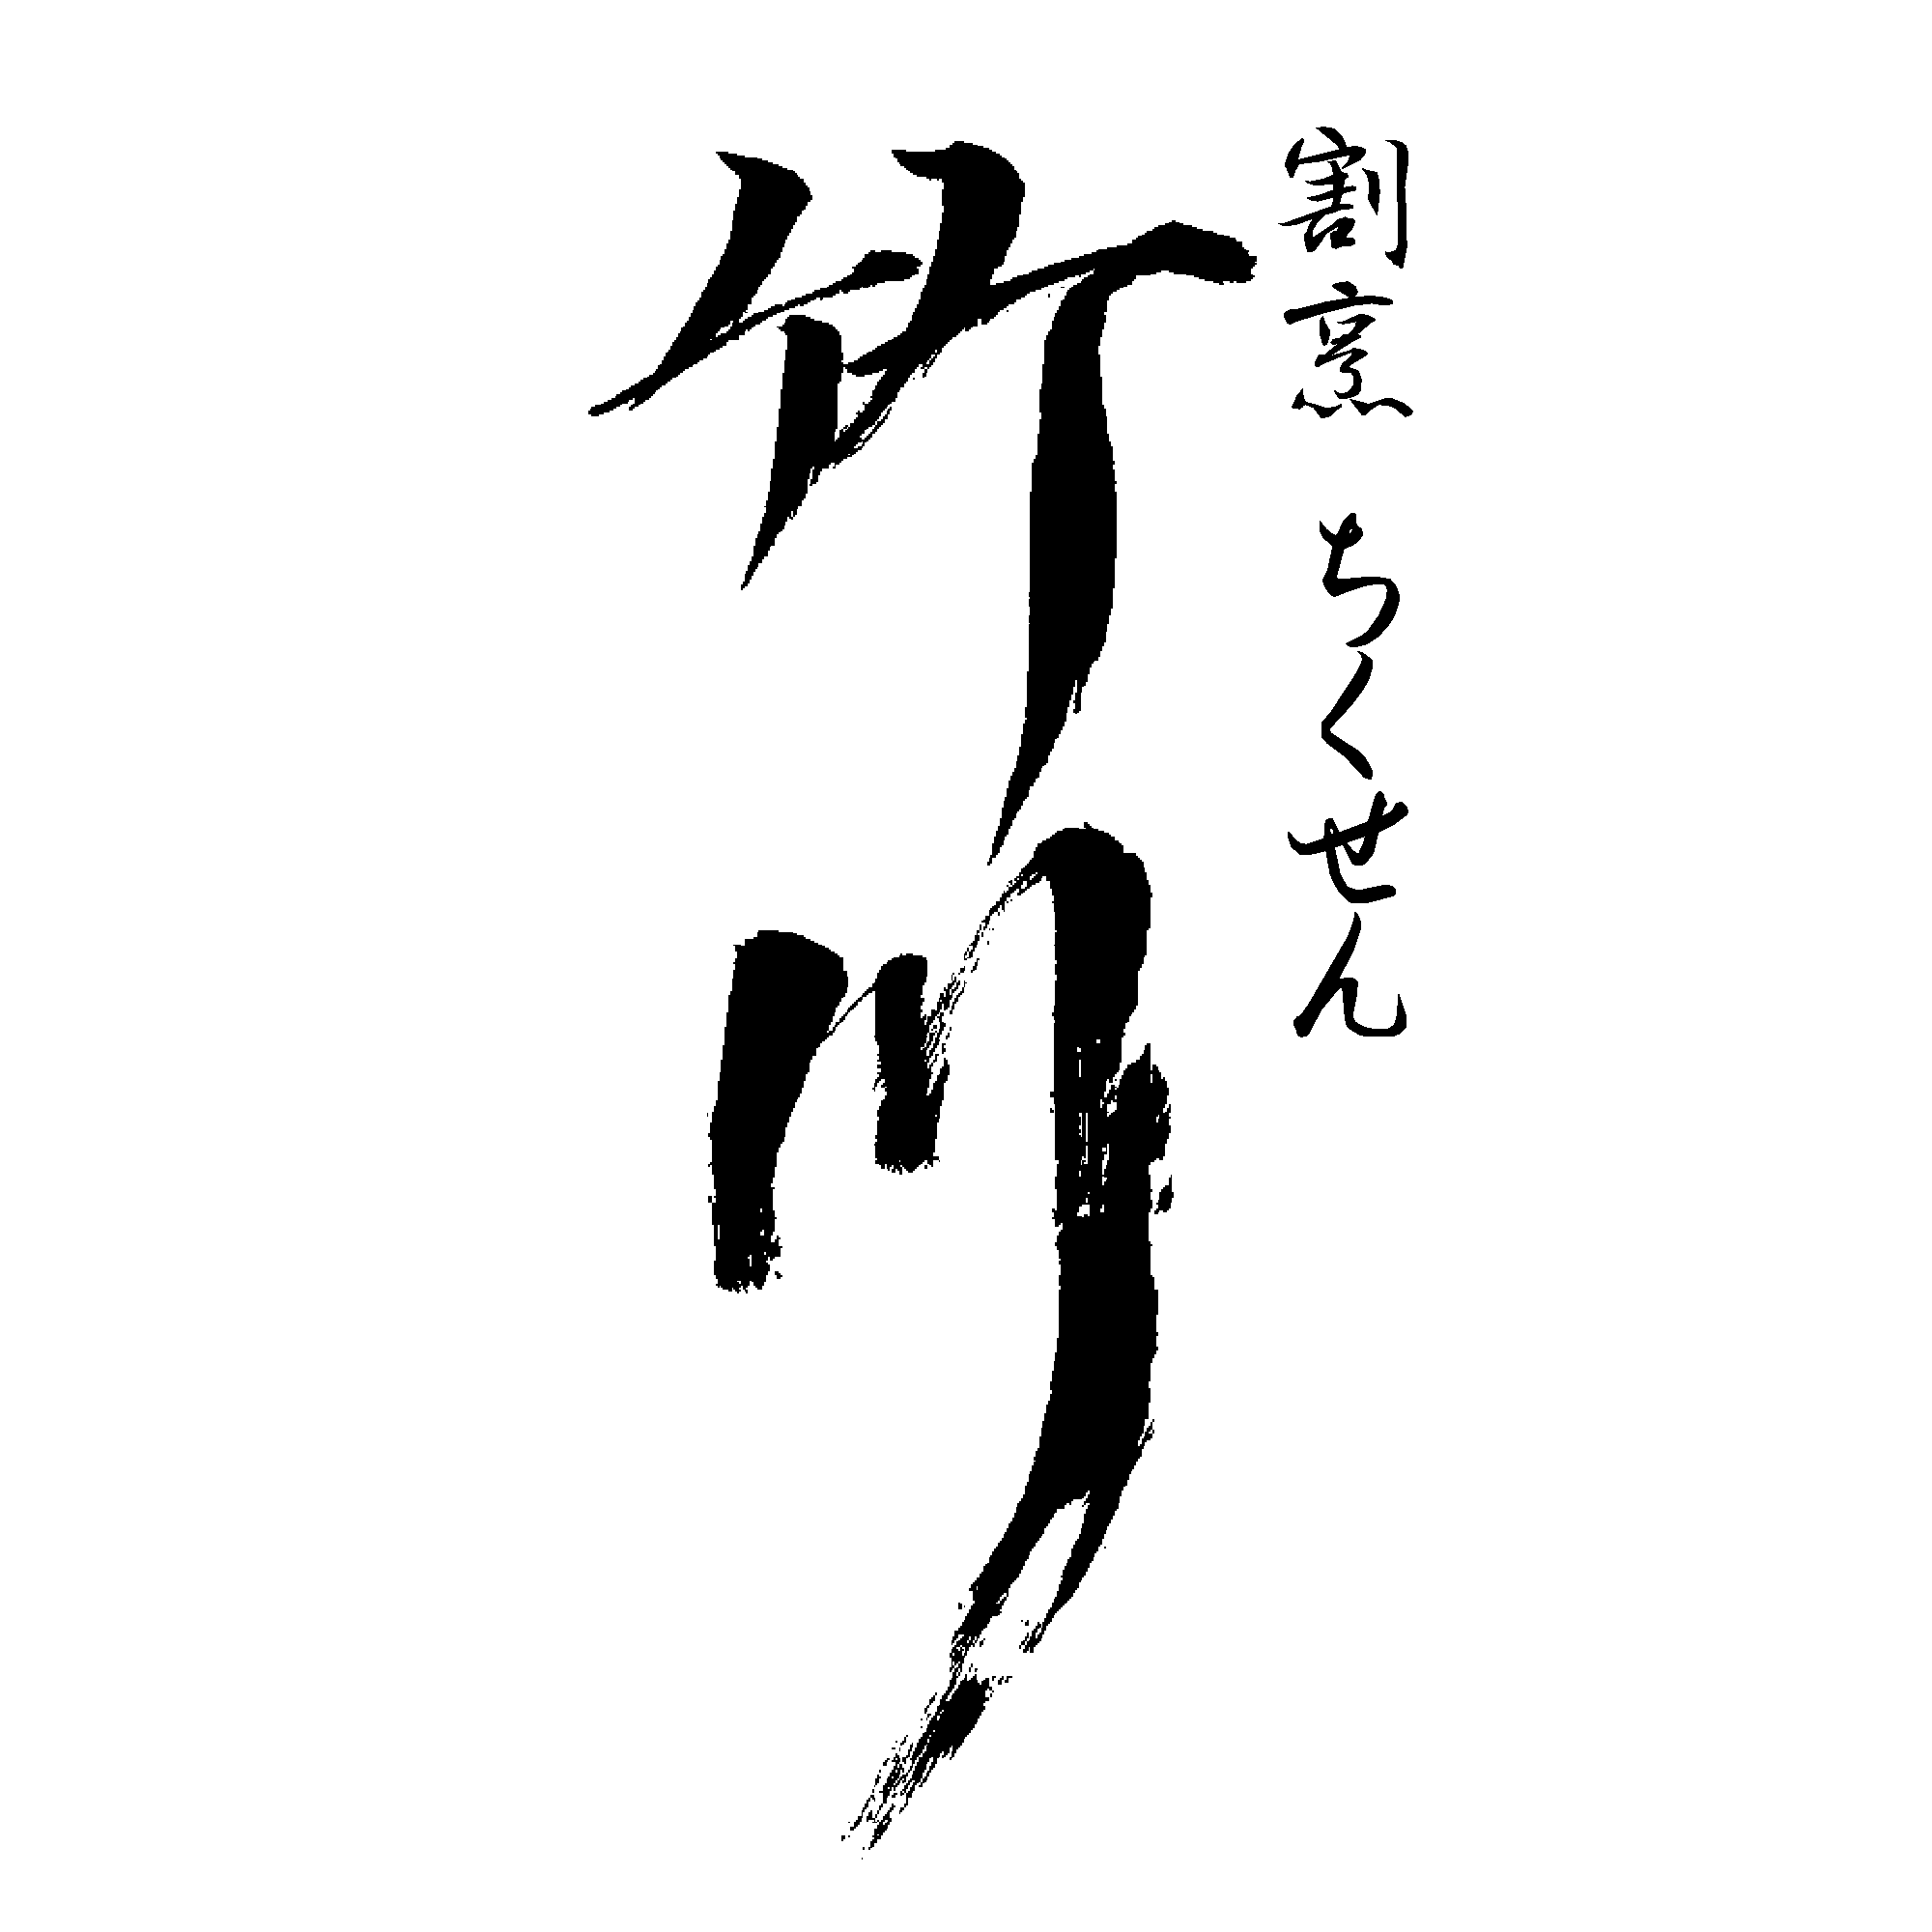 銀座のラウンジ「竹川-チクセン」のロゴ